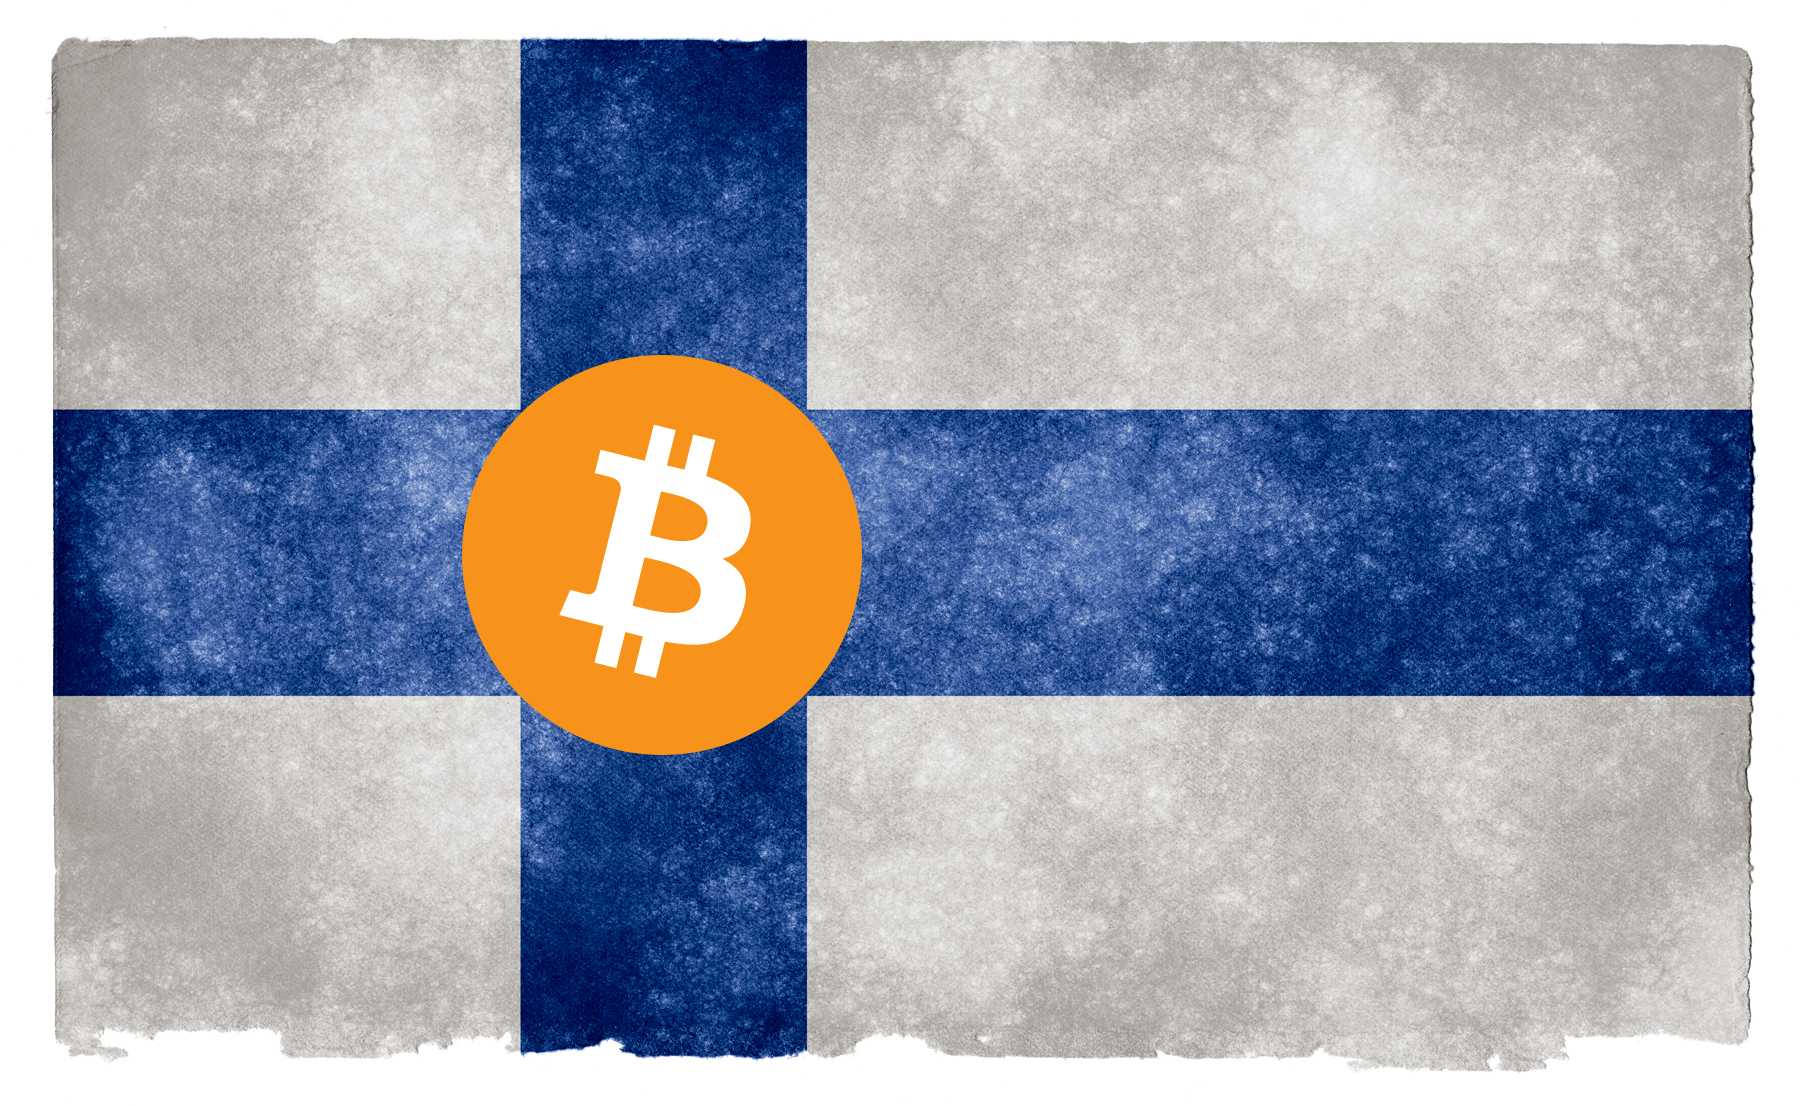 EILMELDUNG: Finnland hodlt Bitcoin (BTC), macht 1.900% Gewinn!